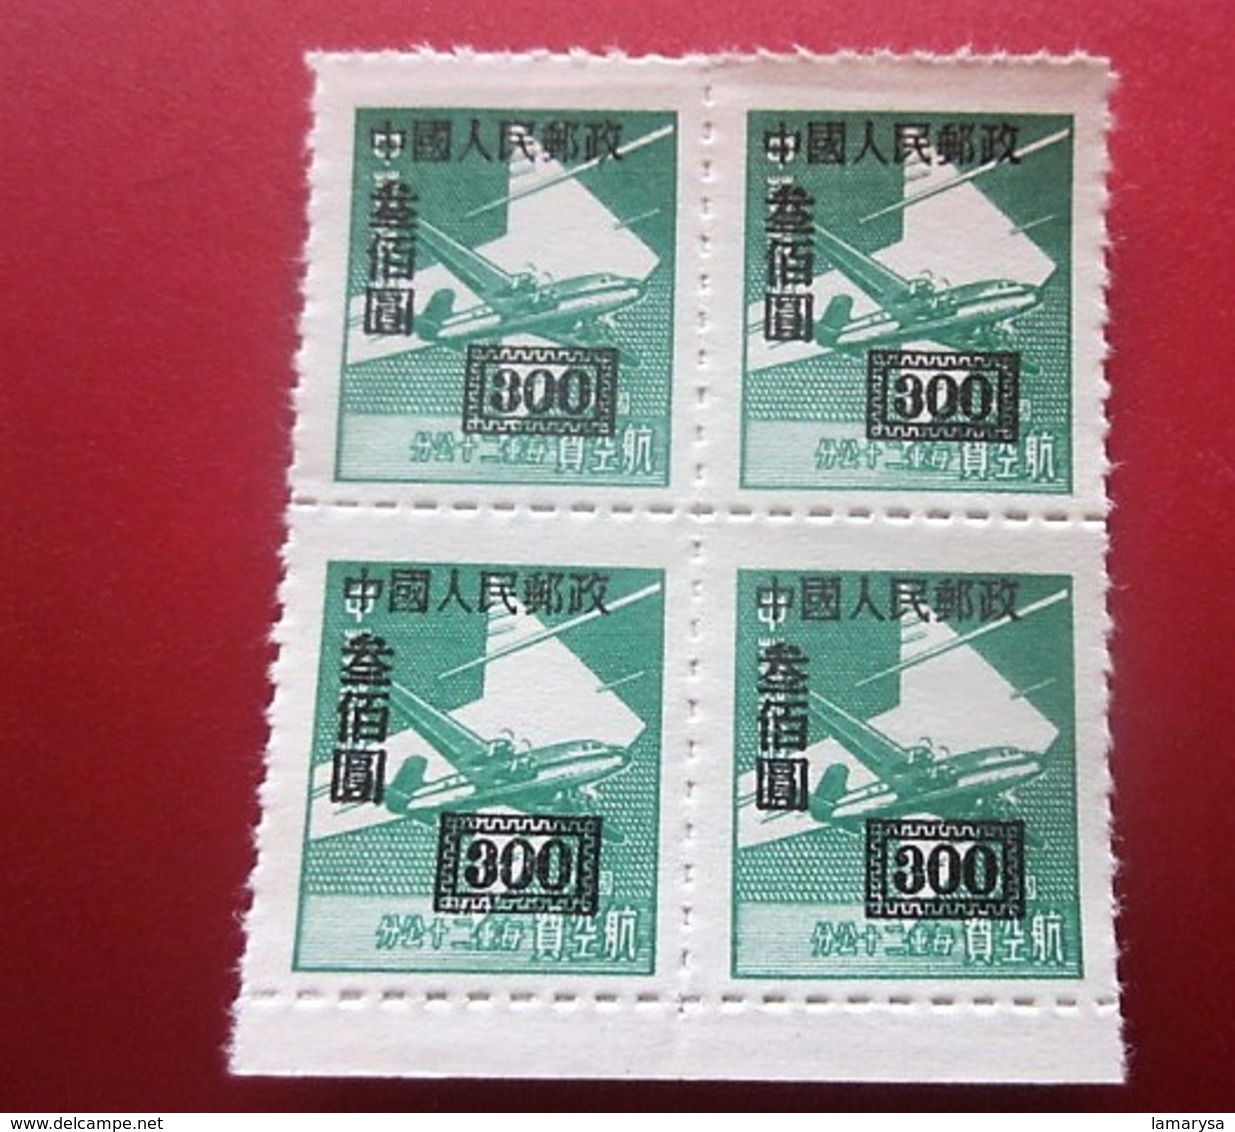 Chine Bloc 4Timbres-Stamps-République Populaire-Poste Aérienne-Asia China-Popular Republic Airmail-亚洲中国第4区邮票热门共和国航空邮件 - Corréo Aéreo